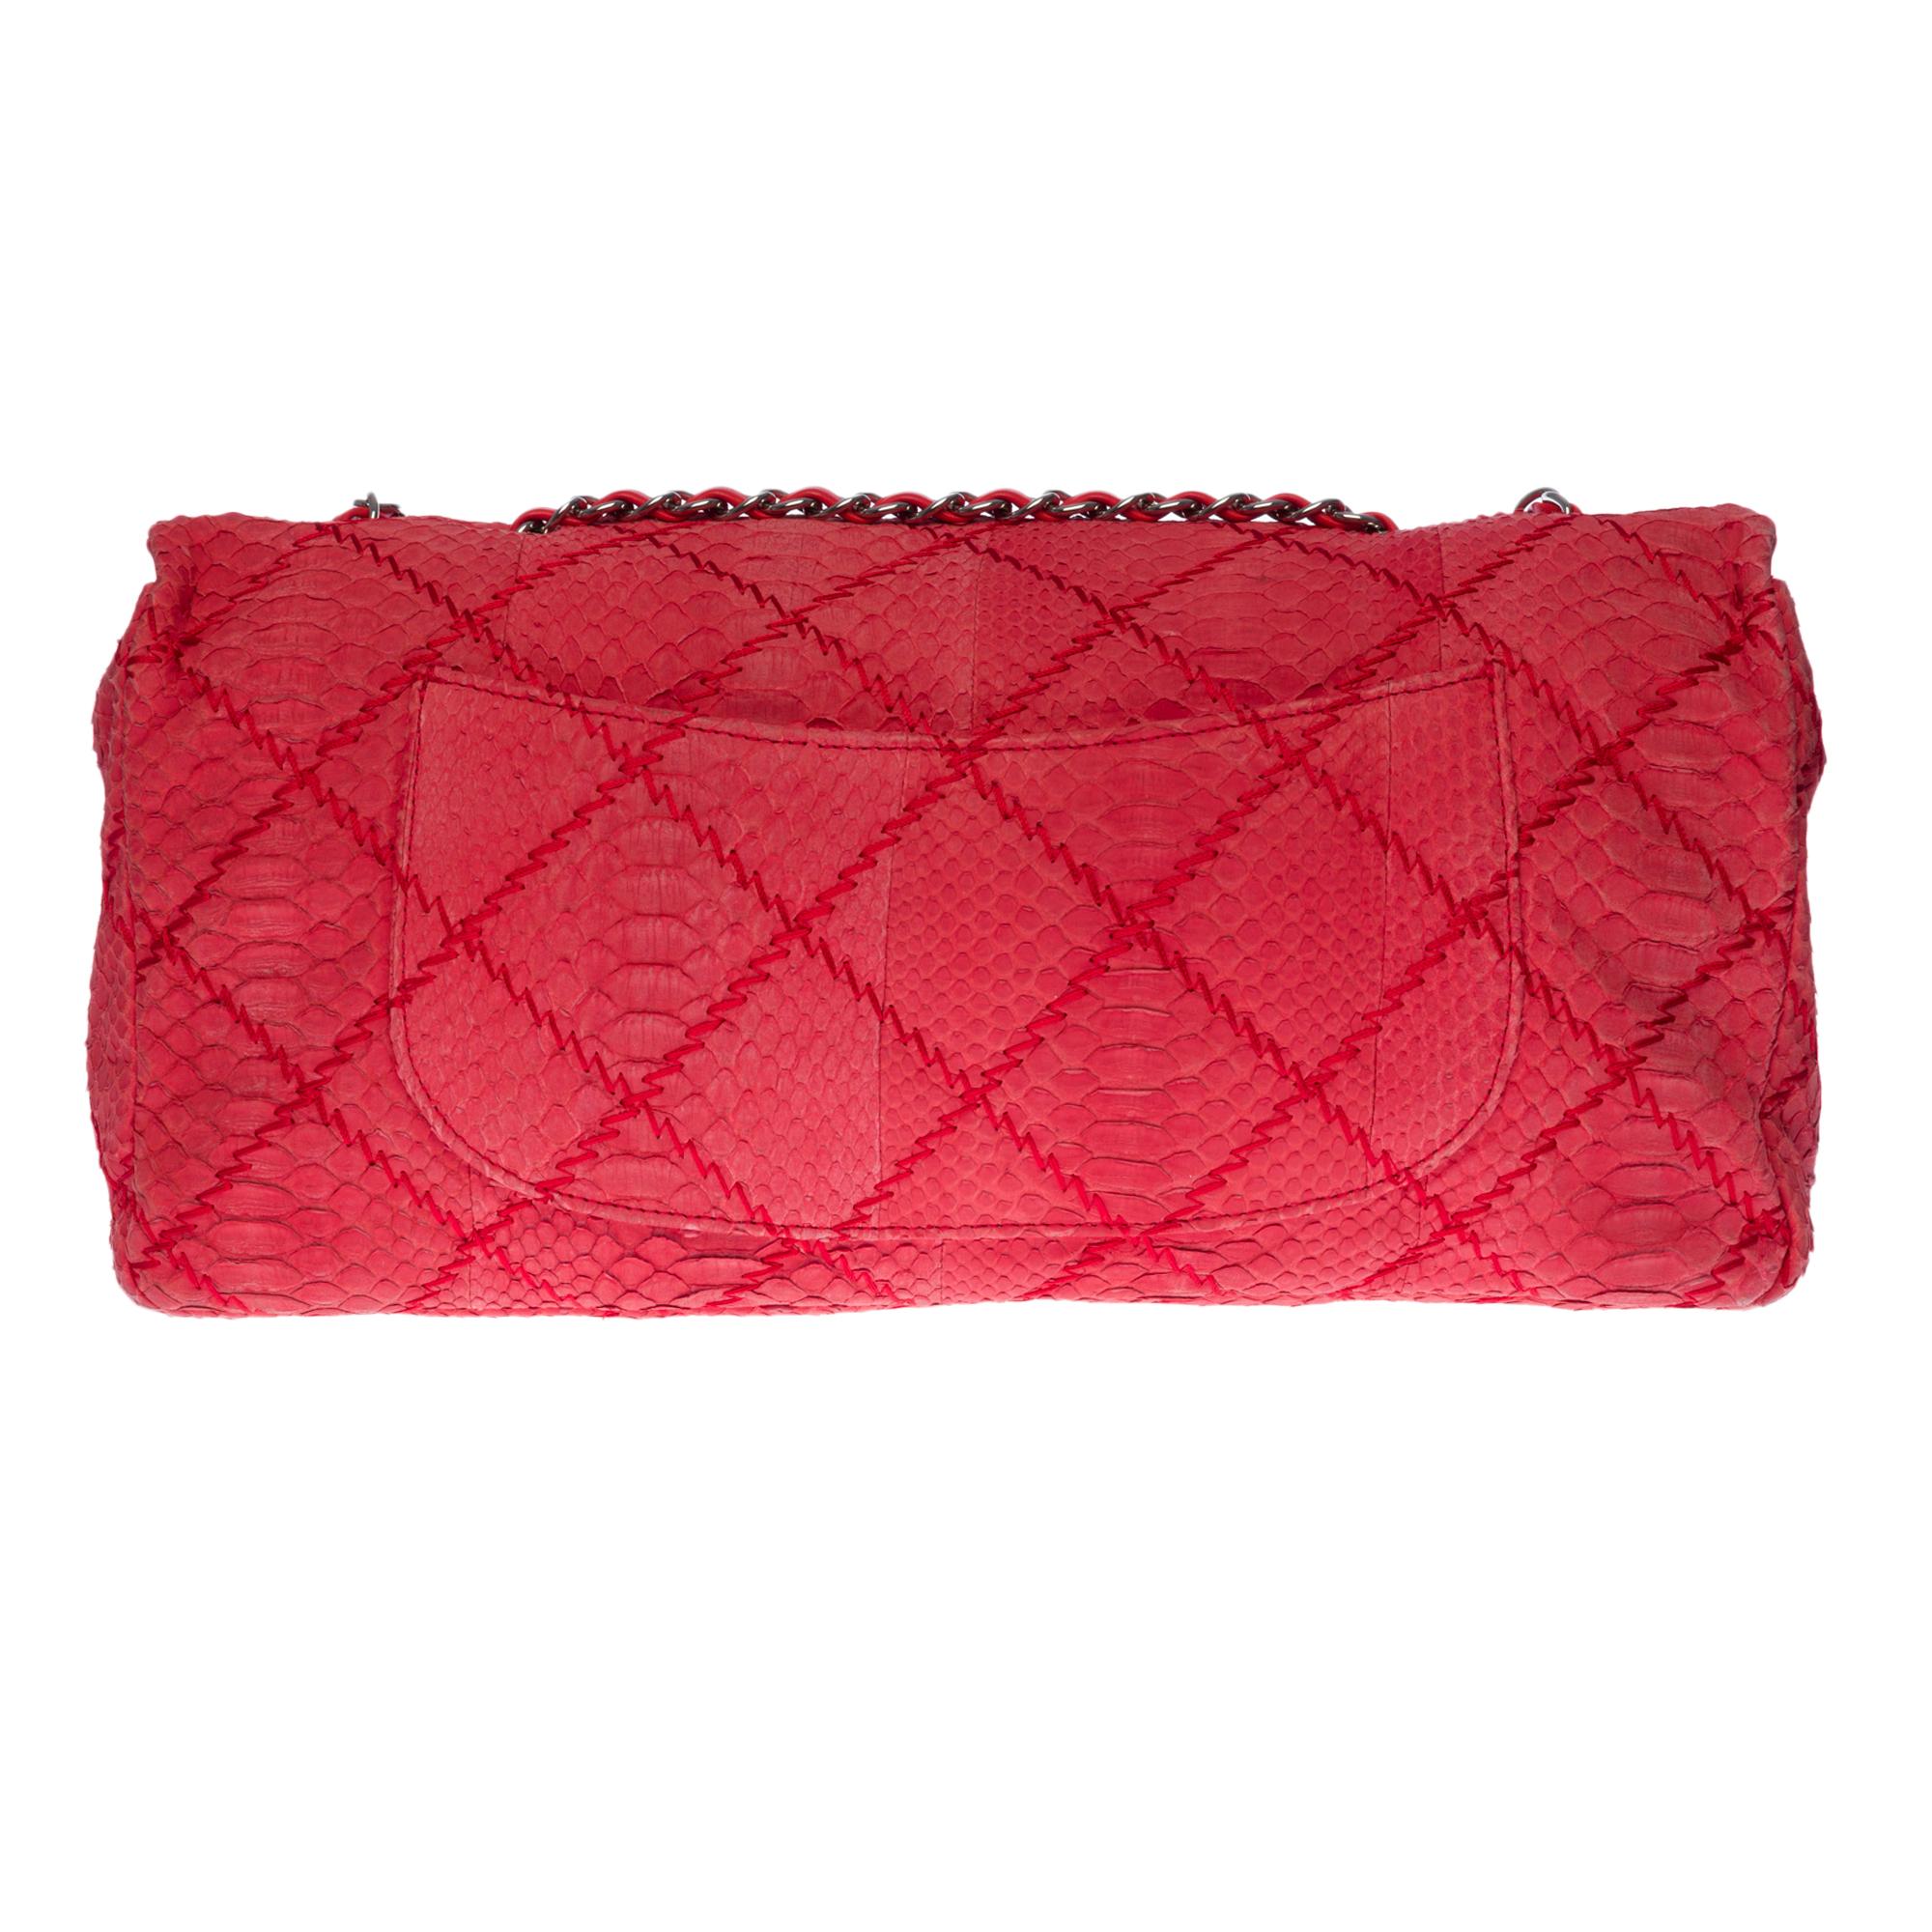 Klassische XL-Handtasche aus rotem Python, silberne Metallbeschläge, ein silberner Metallkettengriff, der mit rotem Leder verflochten ist und einen Hand- oder Schulterriemen ermöglicht.

Silberner CC-Metallverschluss auf der Klappe.
Eine aufgesetzte